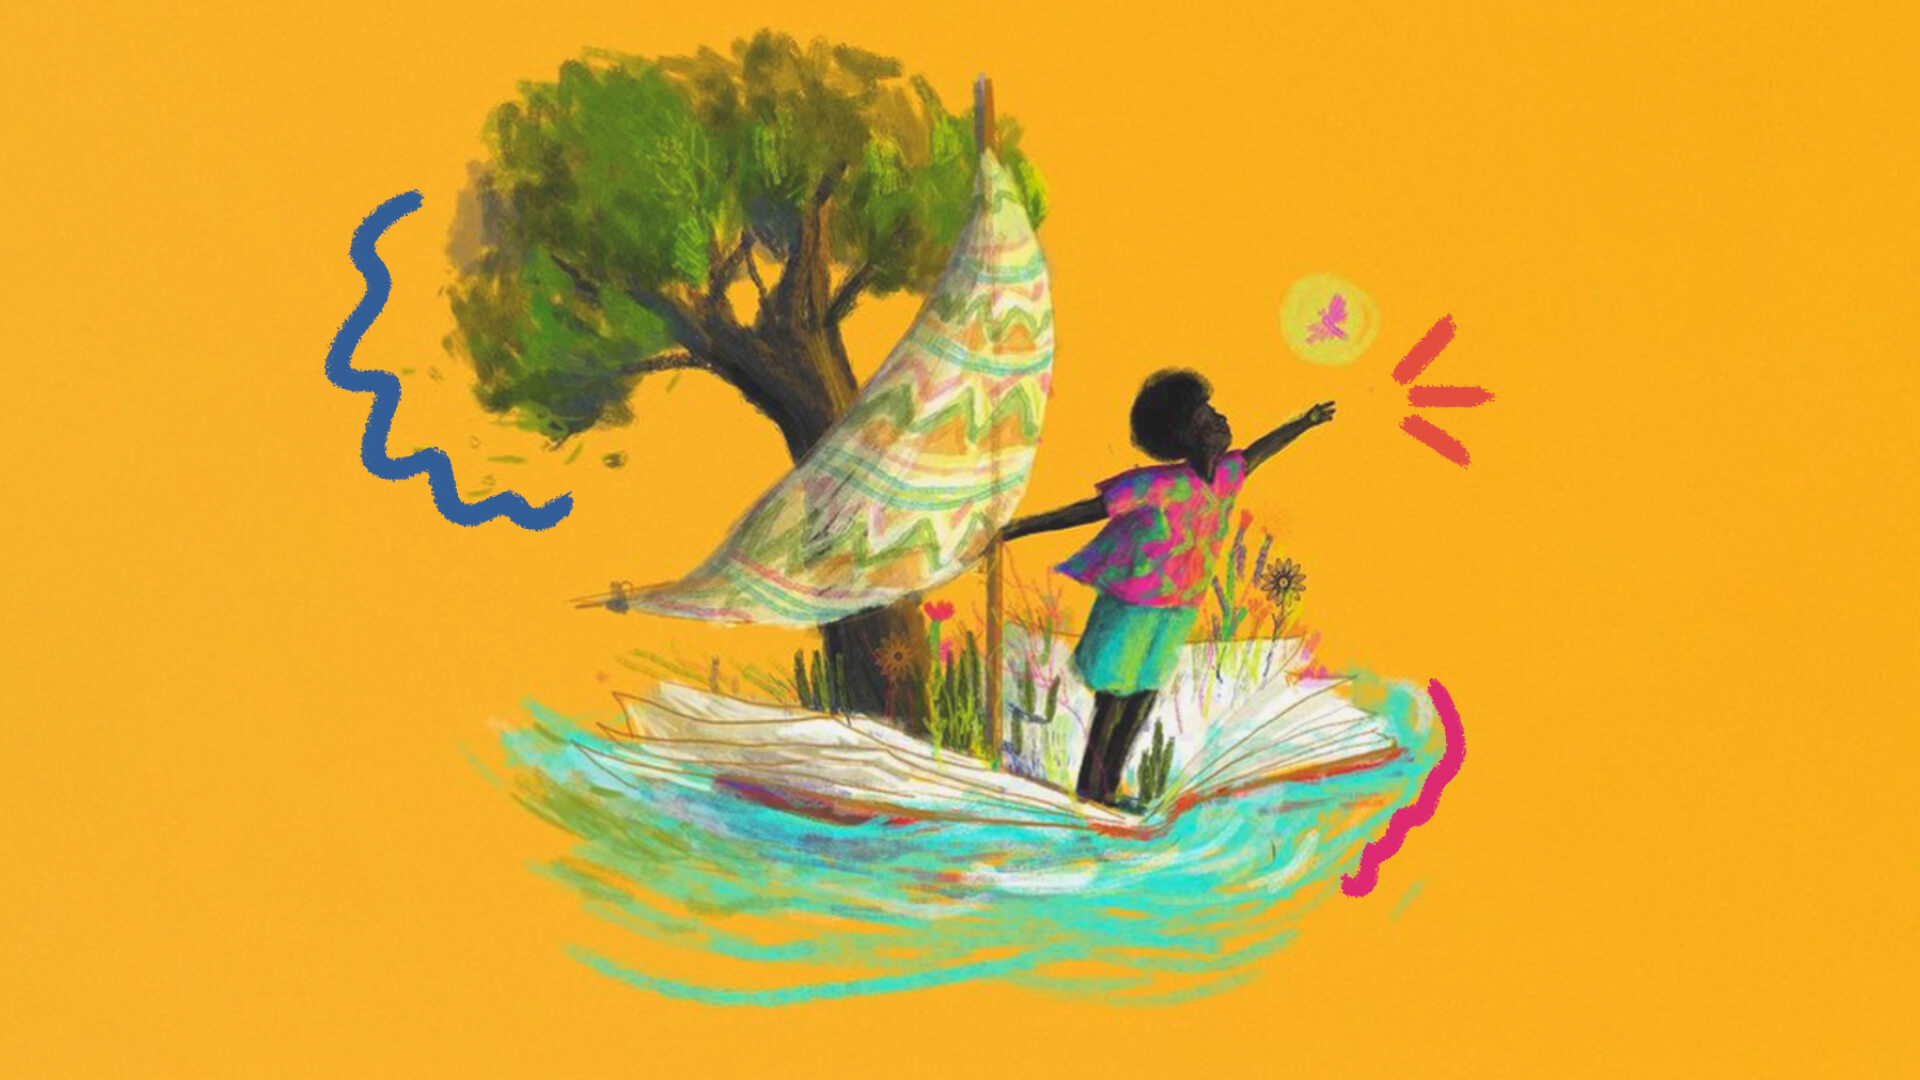 Capa do podcast Calunguinha em que um menino negro navega um barco em fundo amarelo. Atrás dele, há uma árvore.